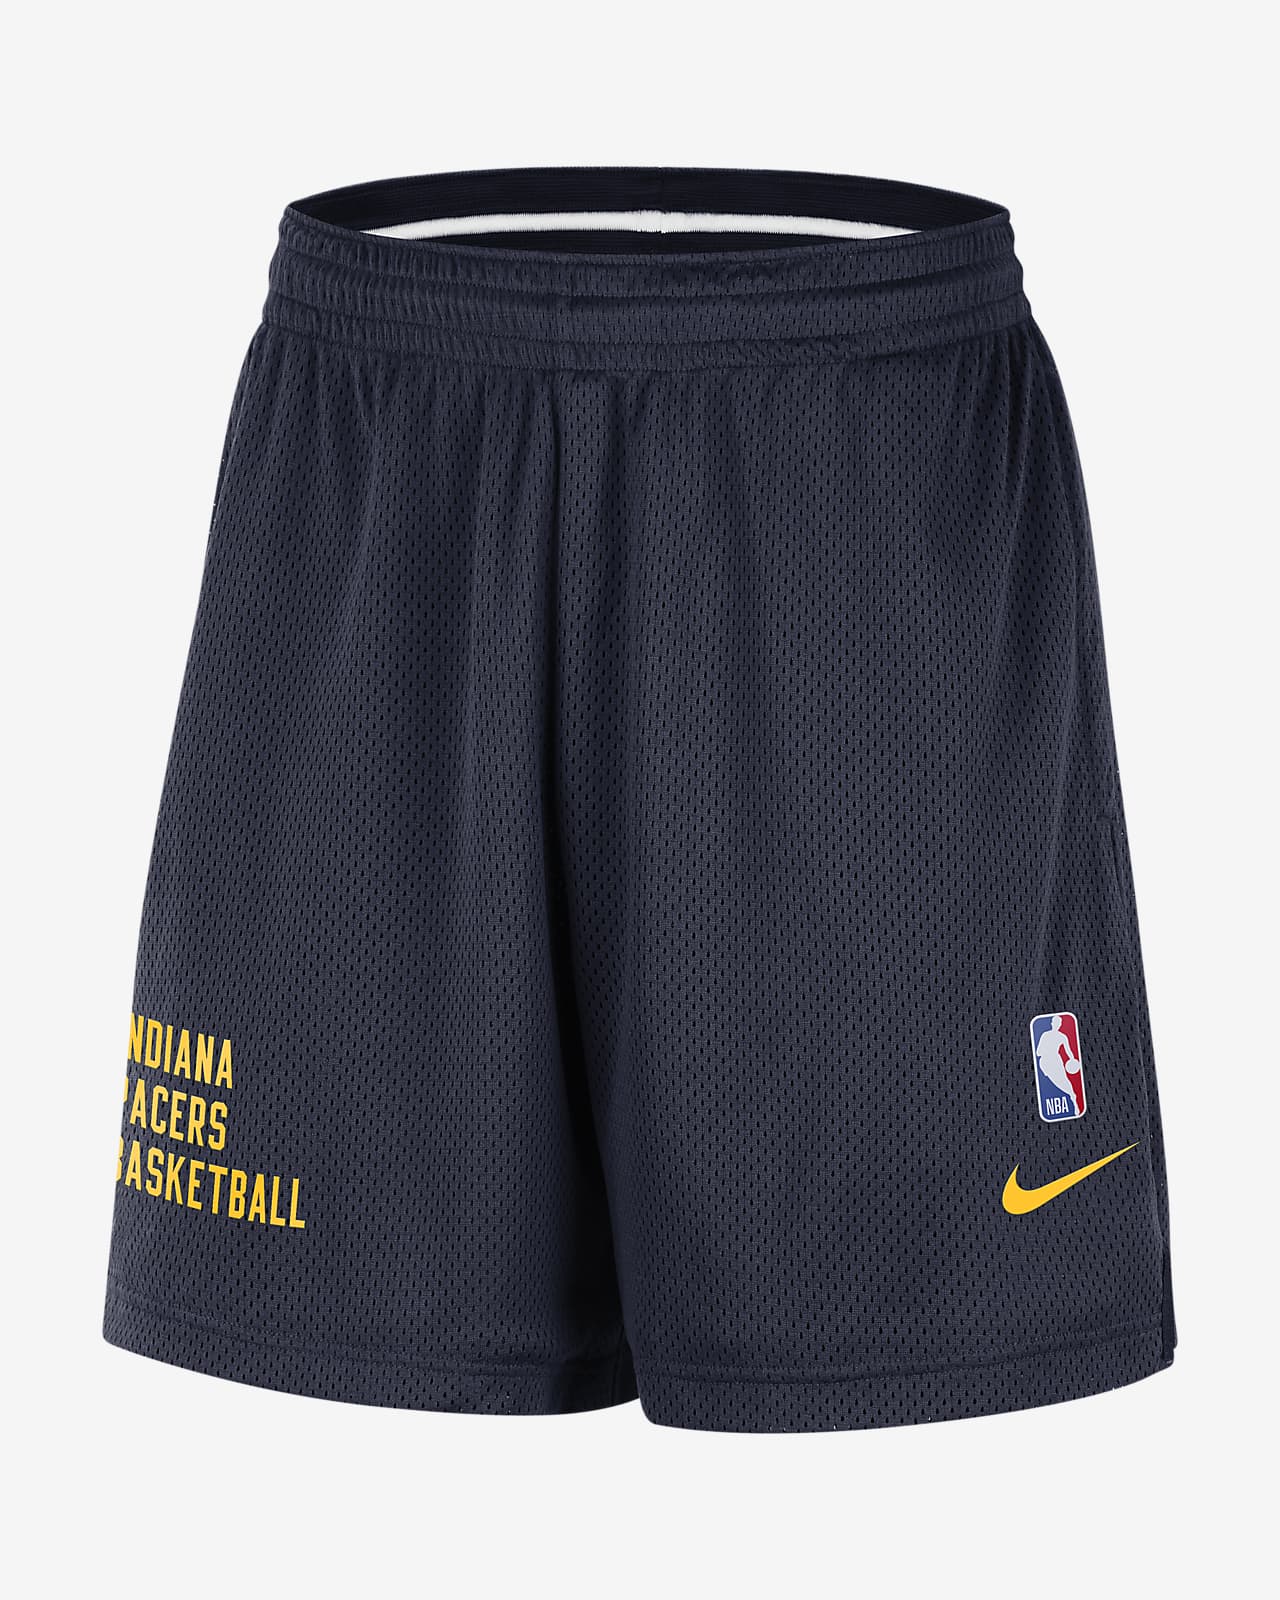 Shorts de malla Nike de la NBA para hombre Indiana Pacers